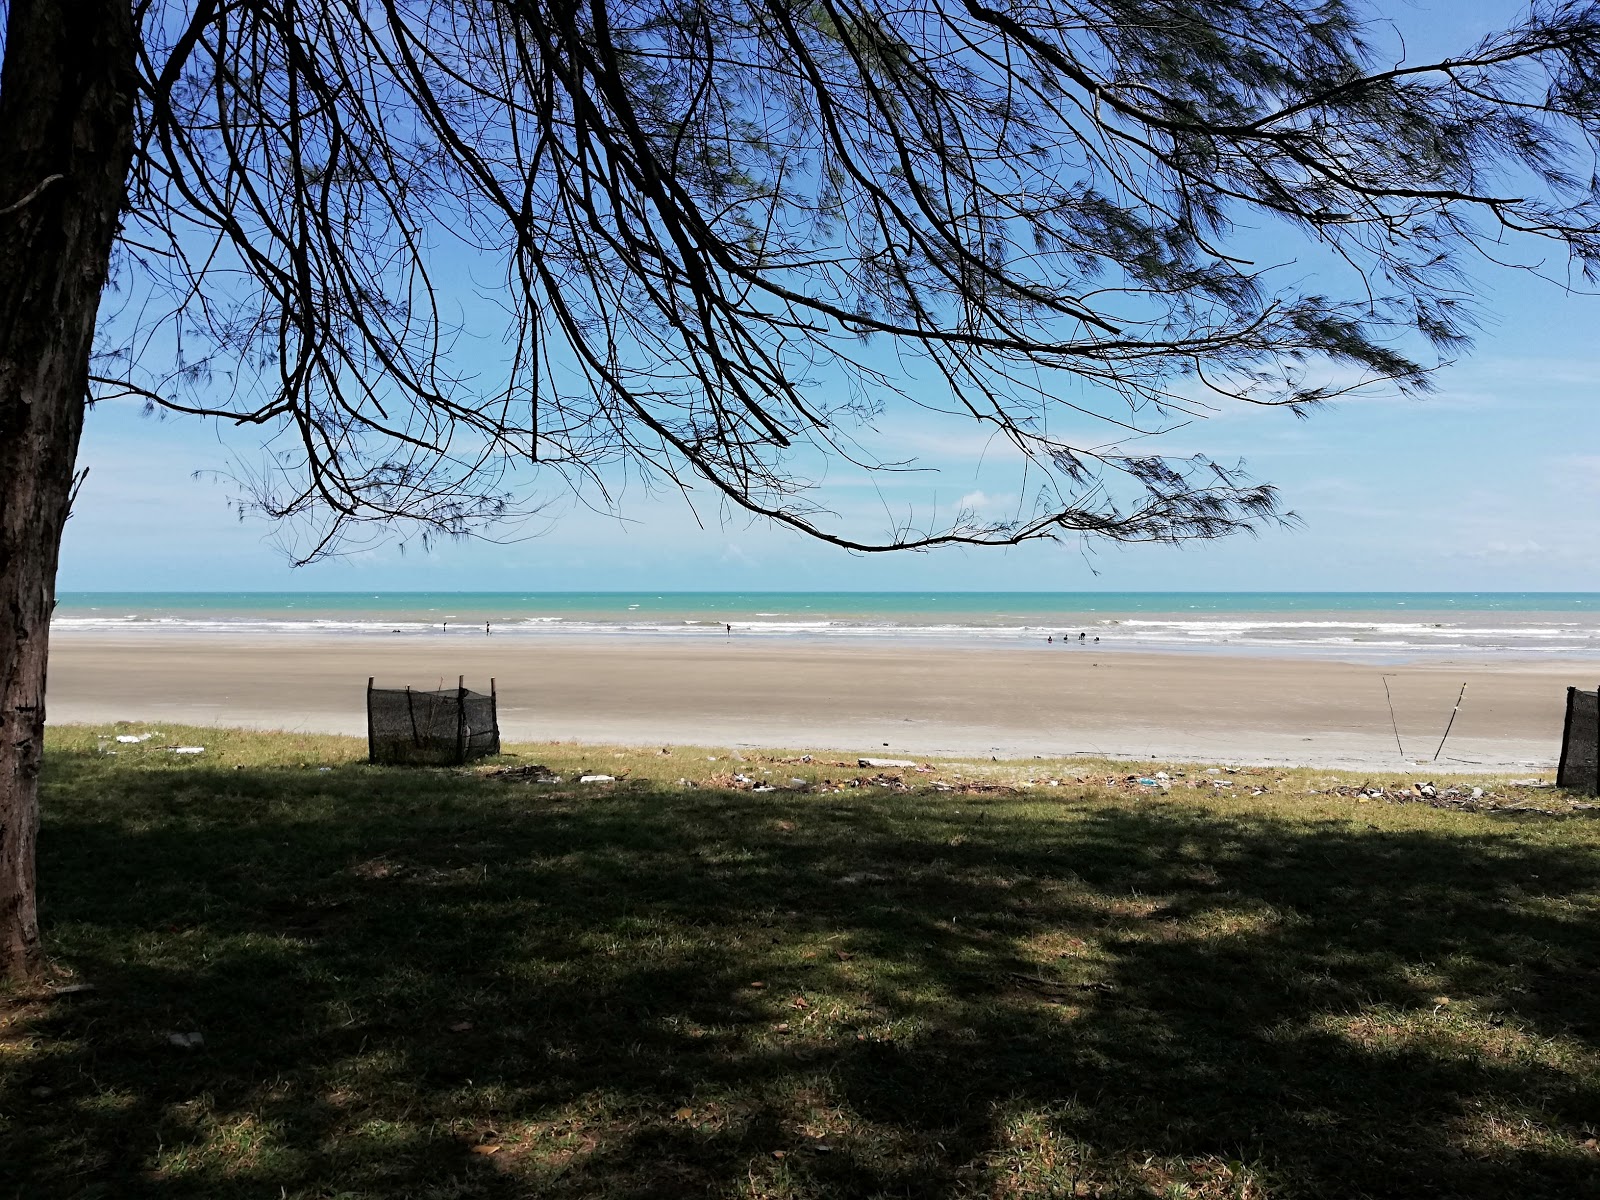 Zdjęcie Cempaka Beach z proste i długie